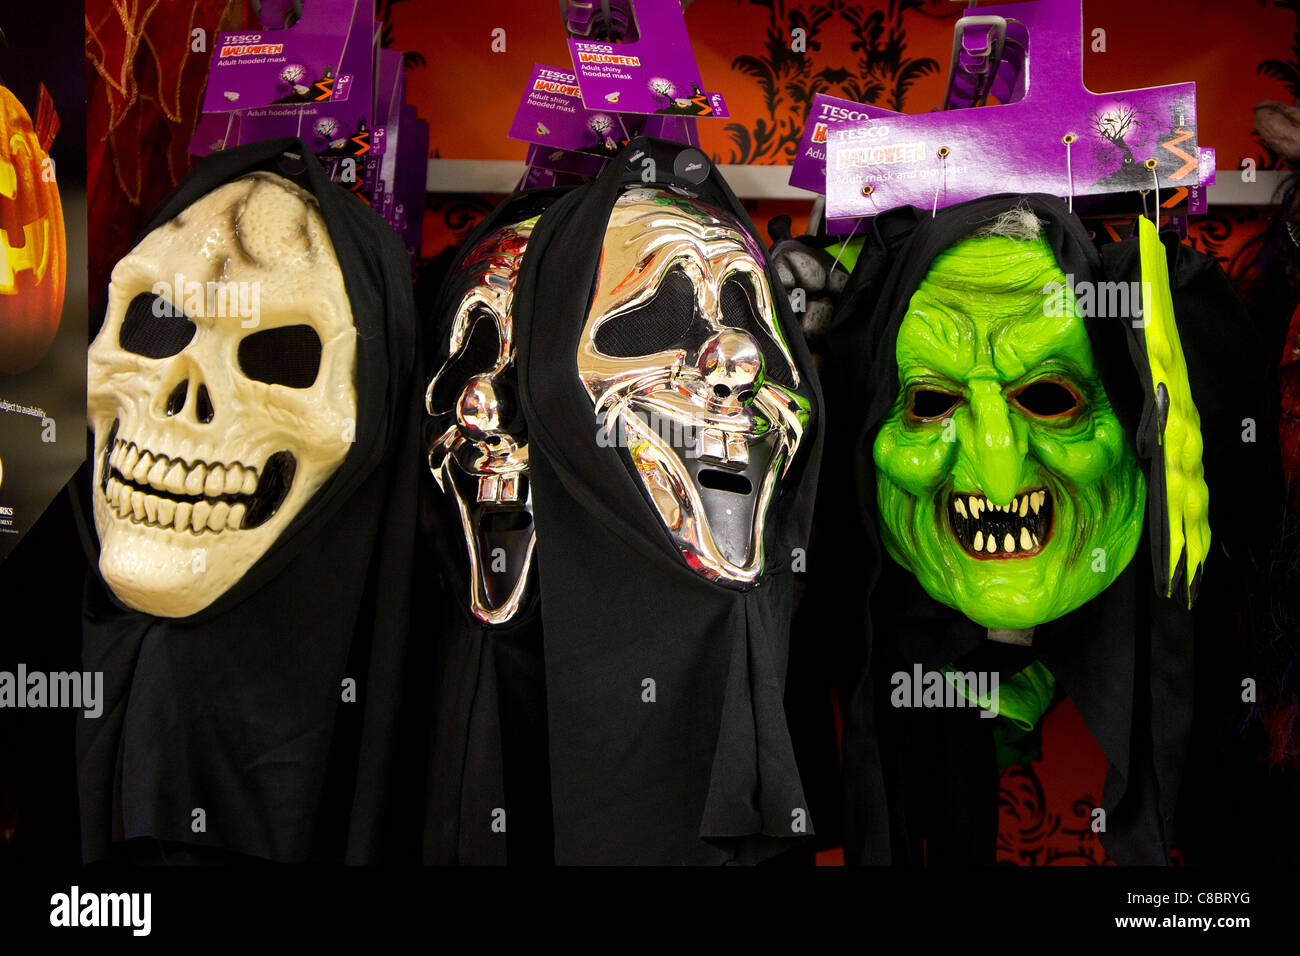 Halloween masks on sale in tesco supermarket, uk Stock Photo